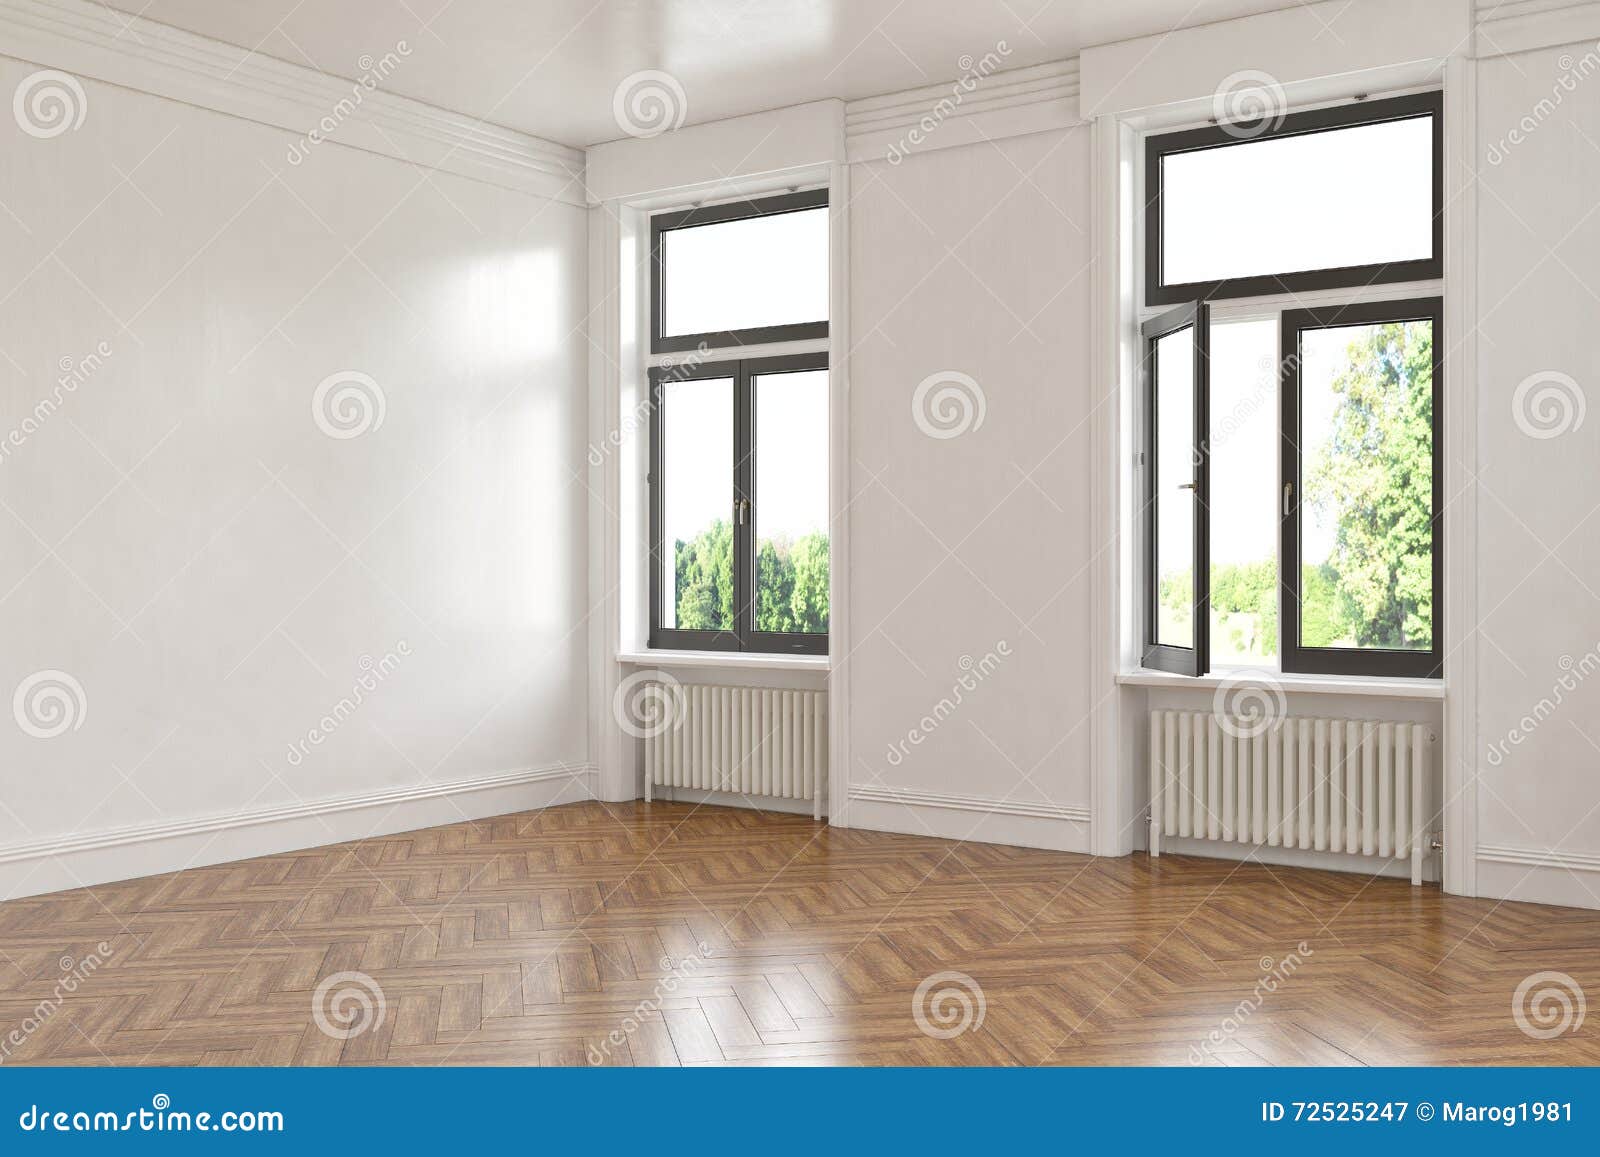 3d - leerer Raum - Wohnung. 3d übertragen von einer gesäuberten alten buliding Wohnung - Innenkonzept